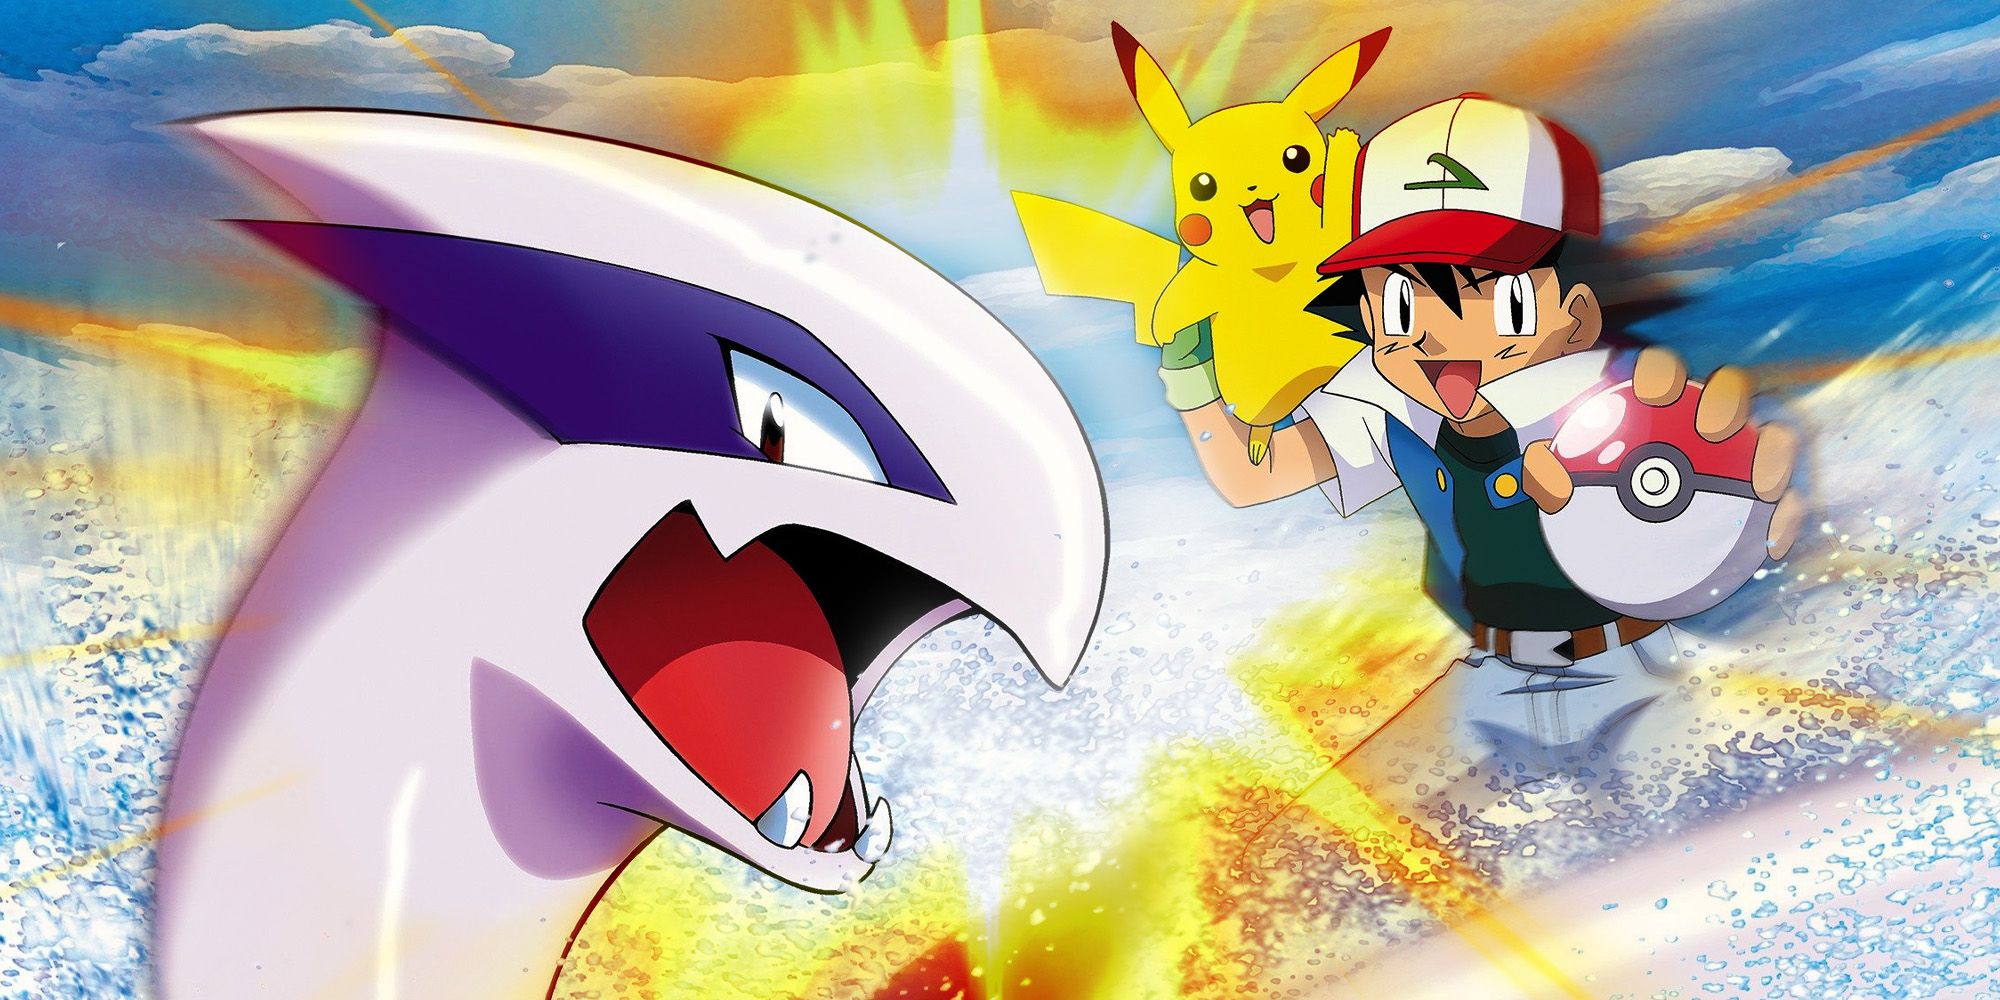 El juego Lost Pokémon The Movie 2000 ahora se puede jugar nuevamente